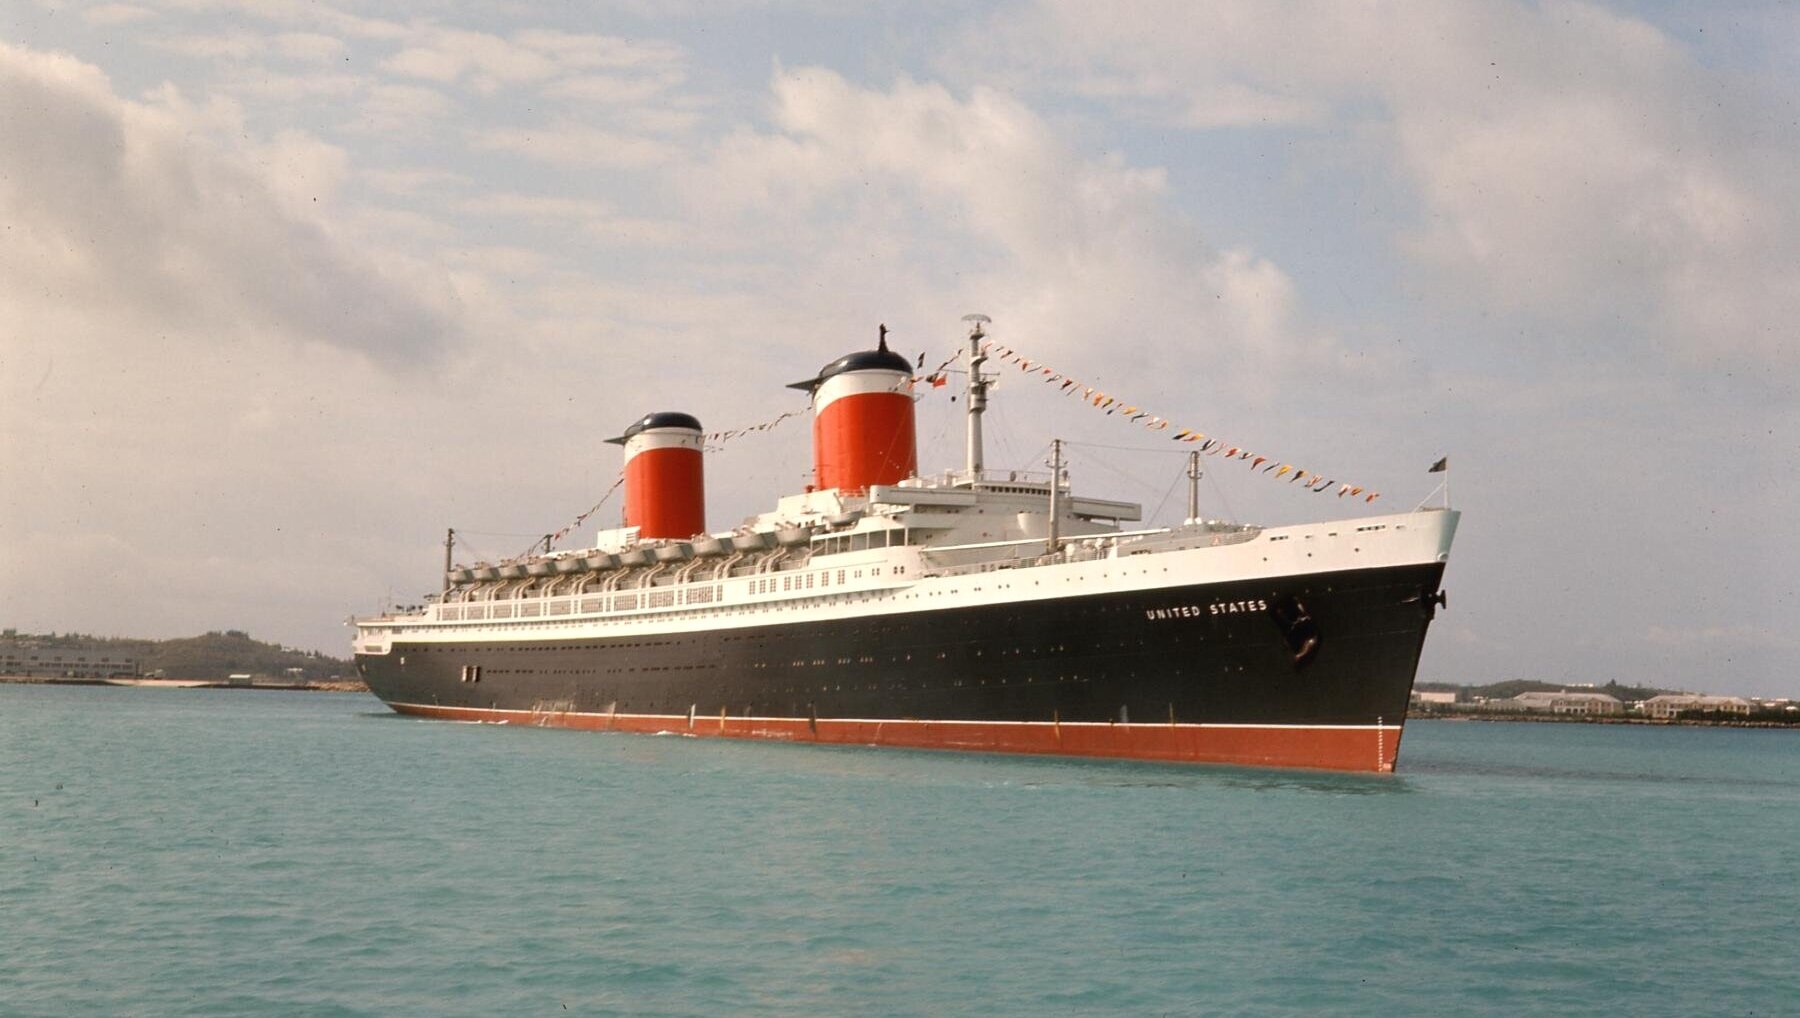 The SS United States in 1966 (Image courtesy of Nick Landiak)